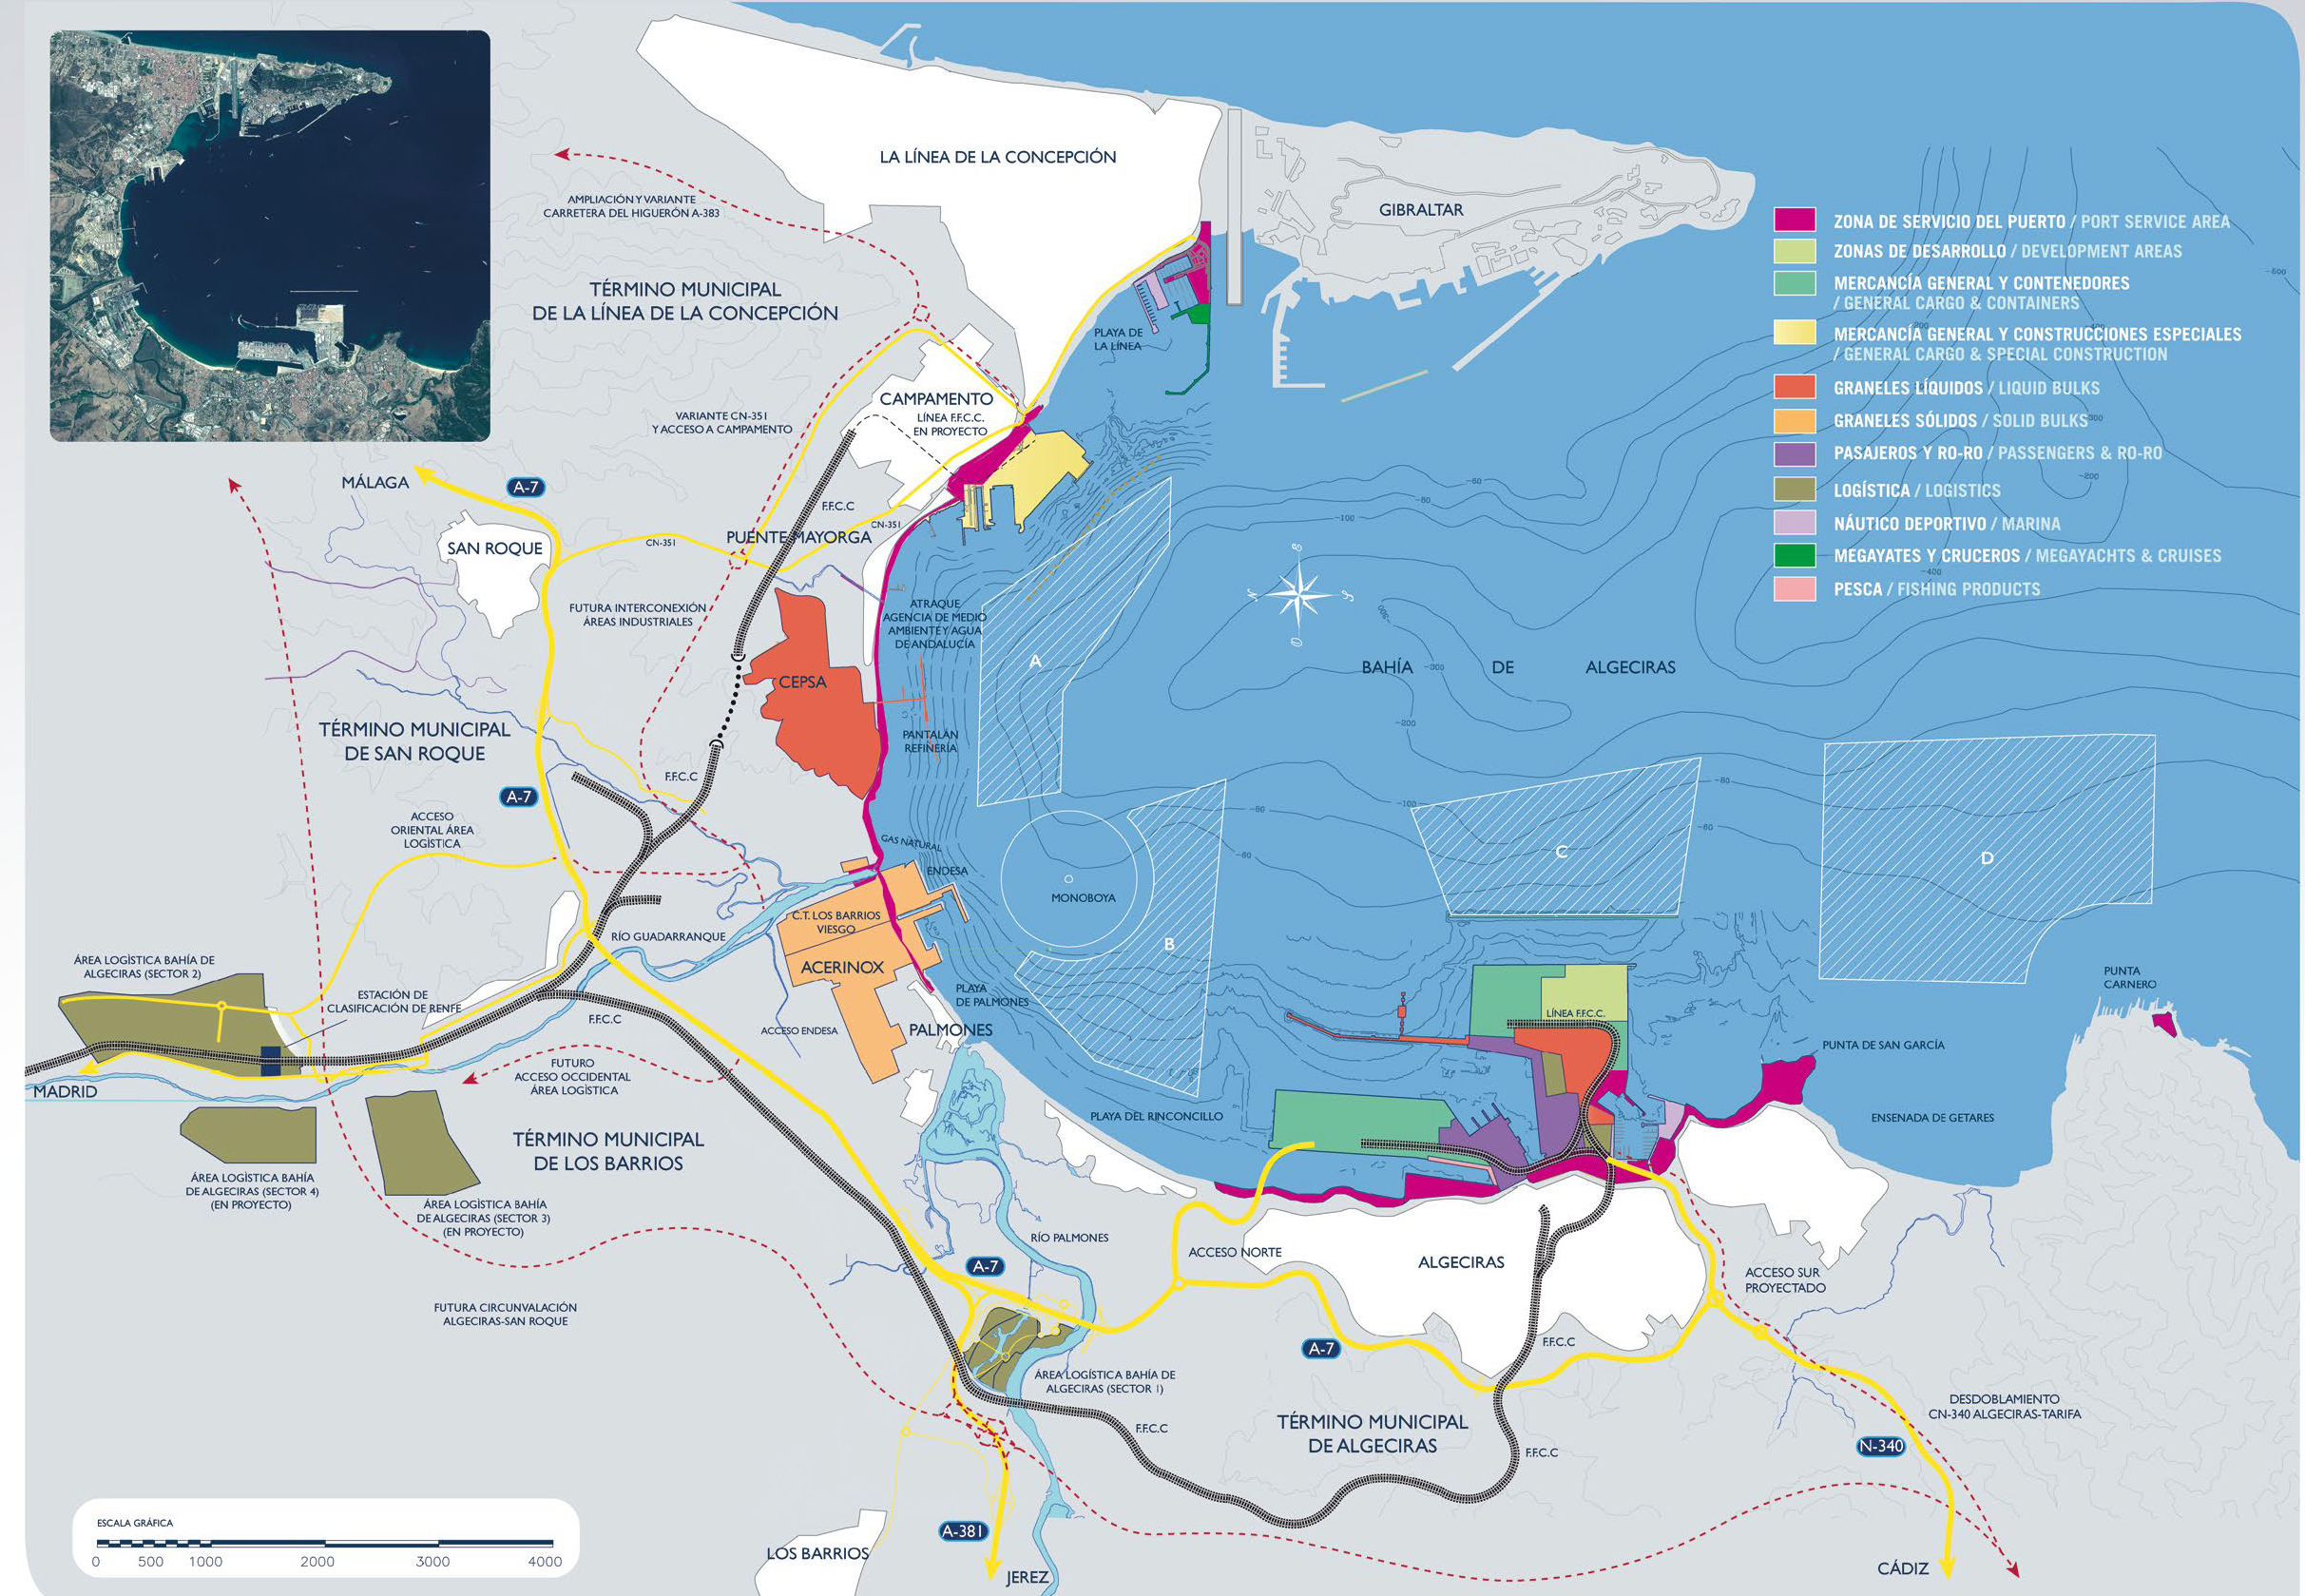 Puerto Algeciras - SONA Servicio - plano carta servicios 2021-2022. Foto APBA ALGECIRAS